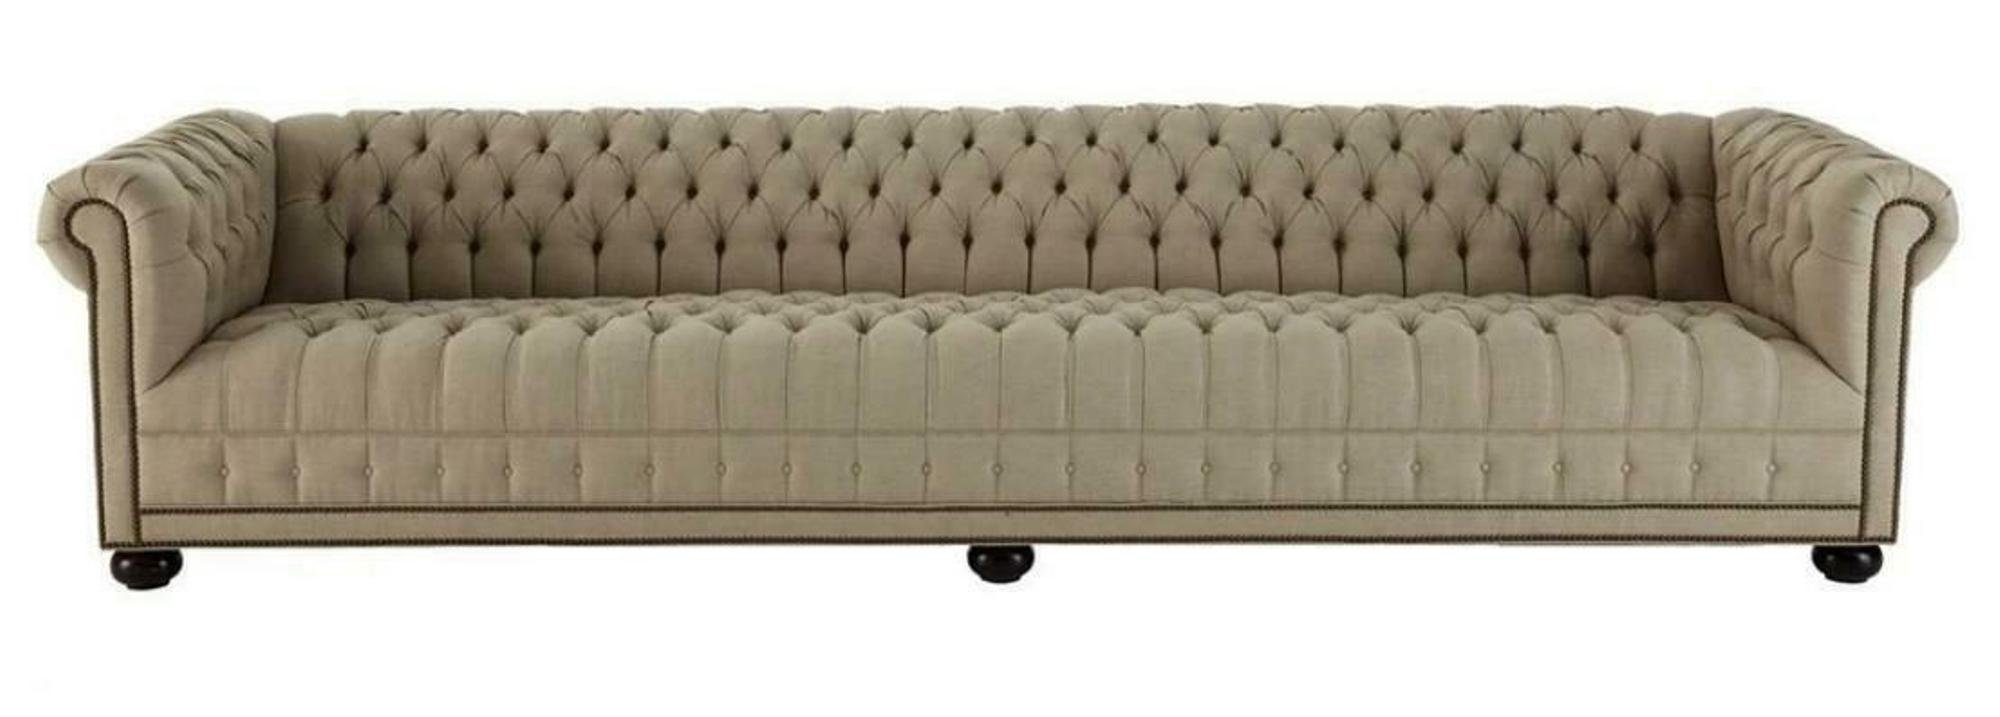 JVmoebel Chesterfield-Sofa, Creme Chesterfield Wohnzimmer Viersitzer Design Couchen Sofa Möbel Braun